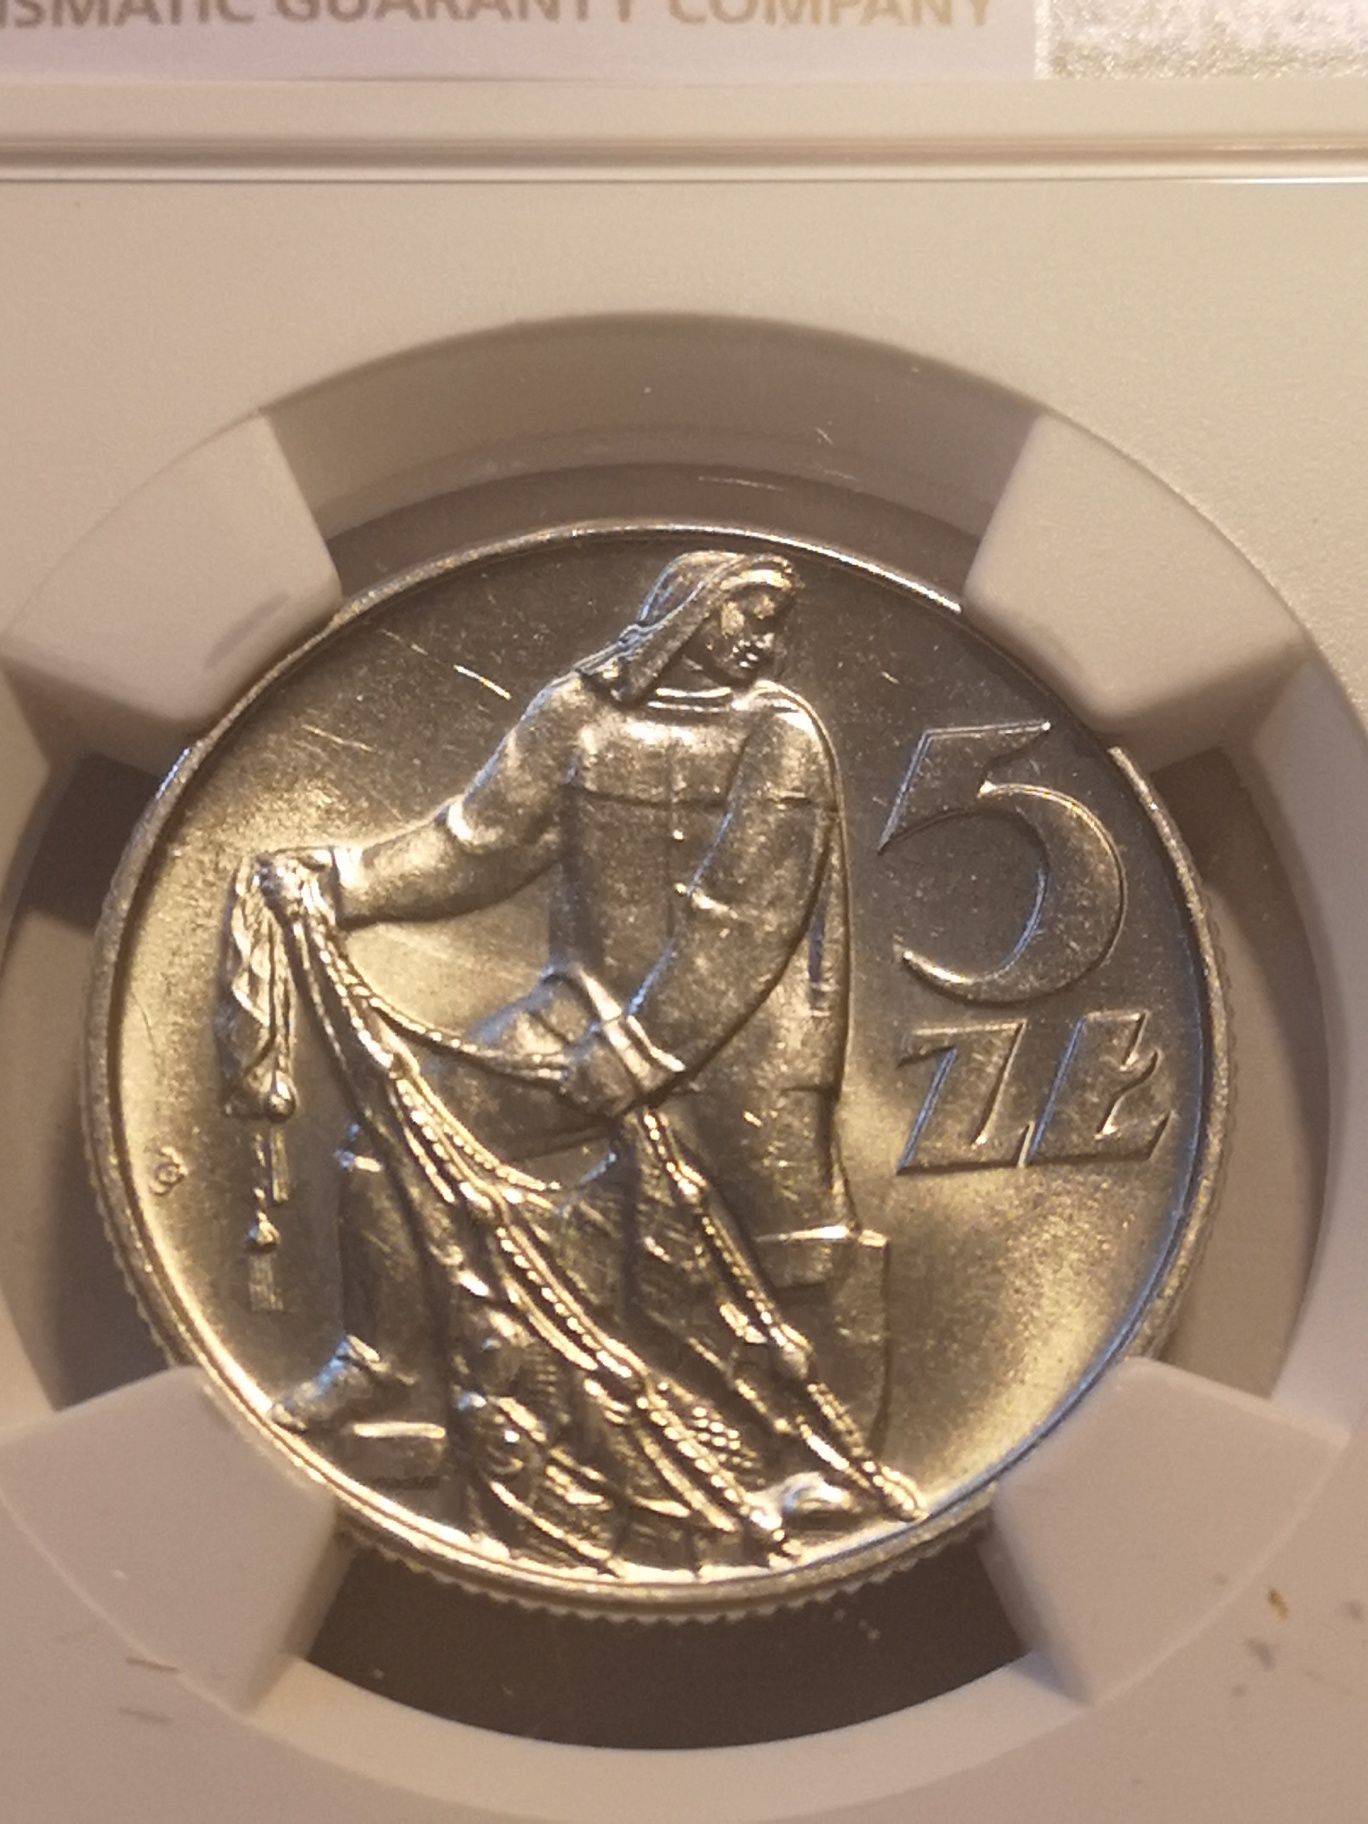 Moneta obiegowa prl 5 zł z rybakiem 1973r MS 63